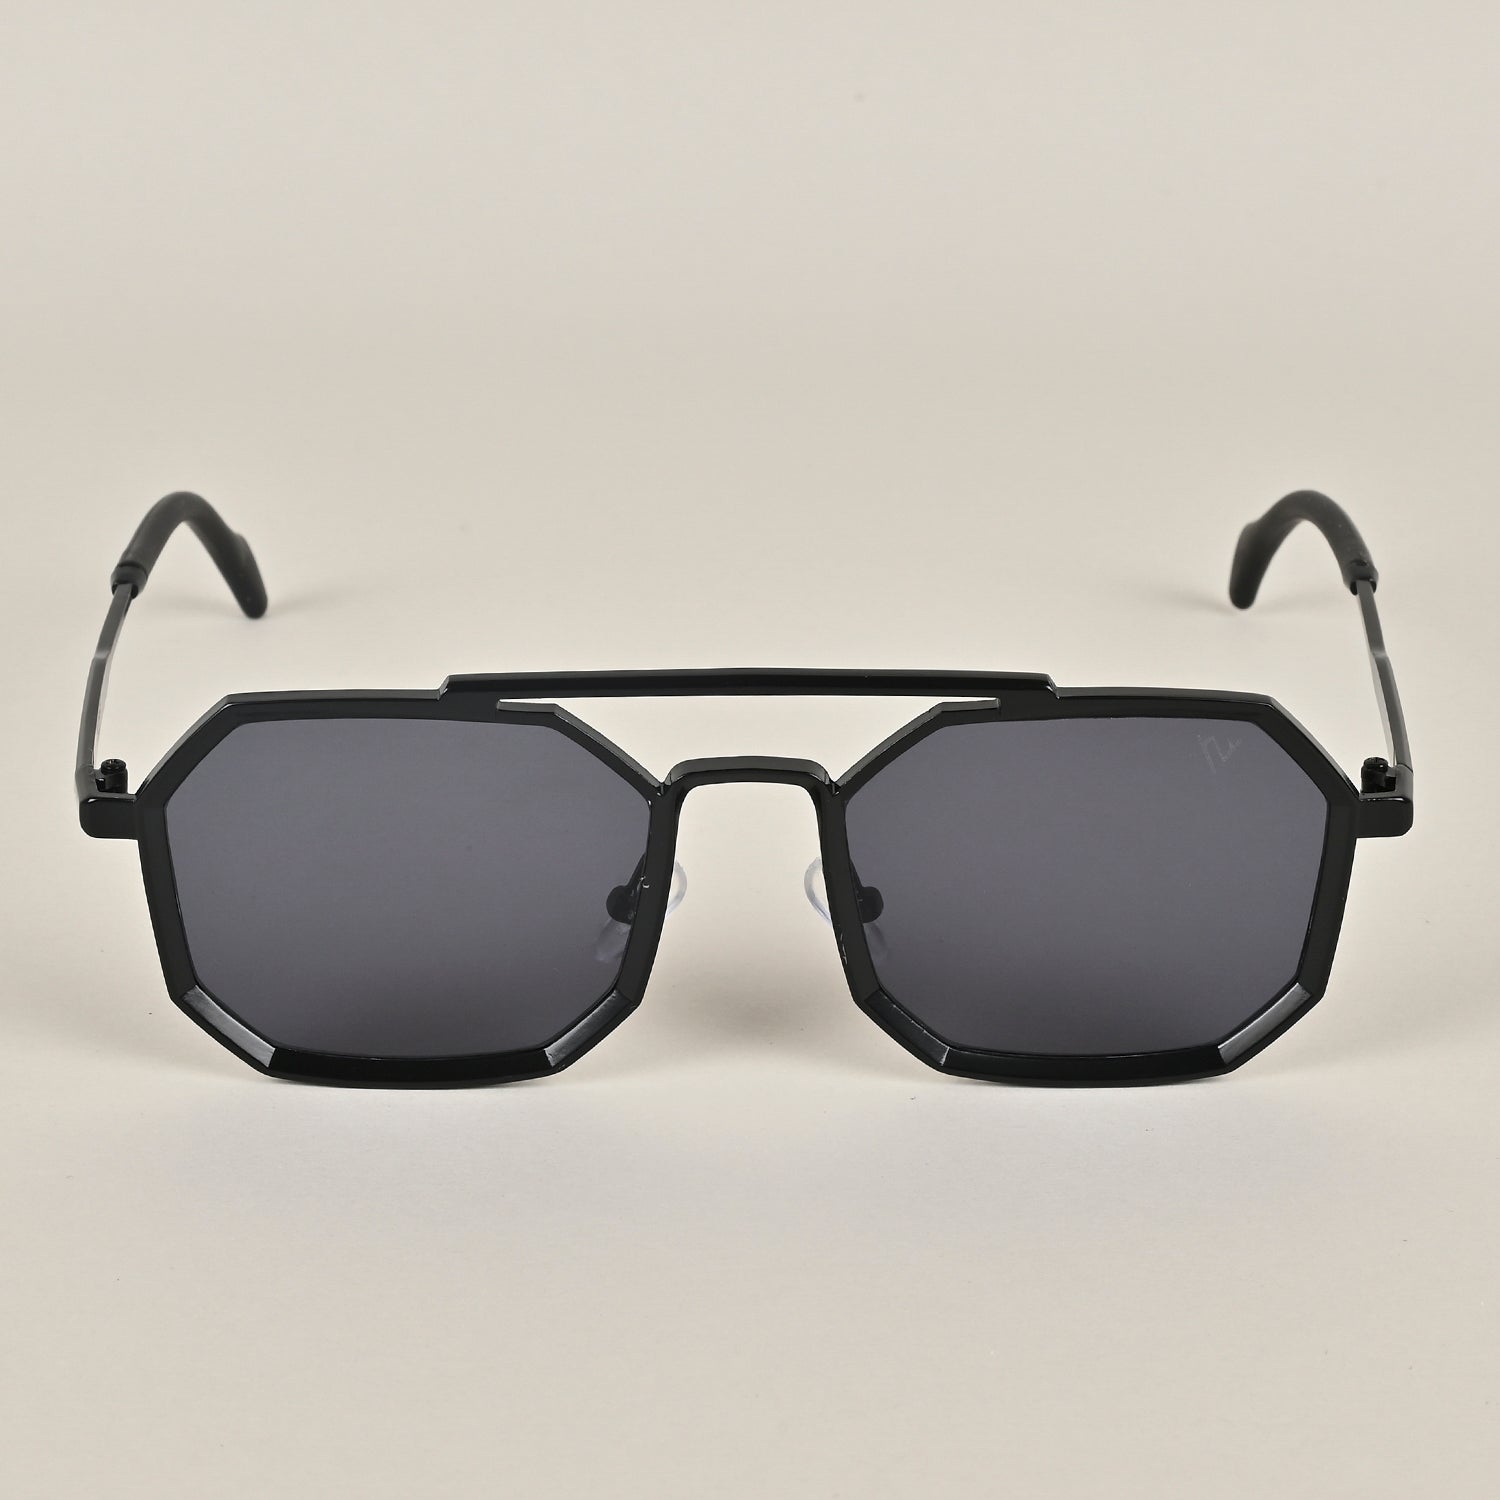 Voyage Retro Square Black Sunglasses MG3620